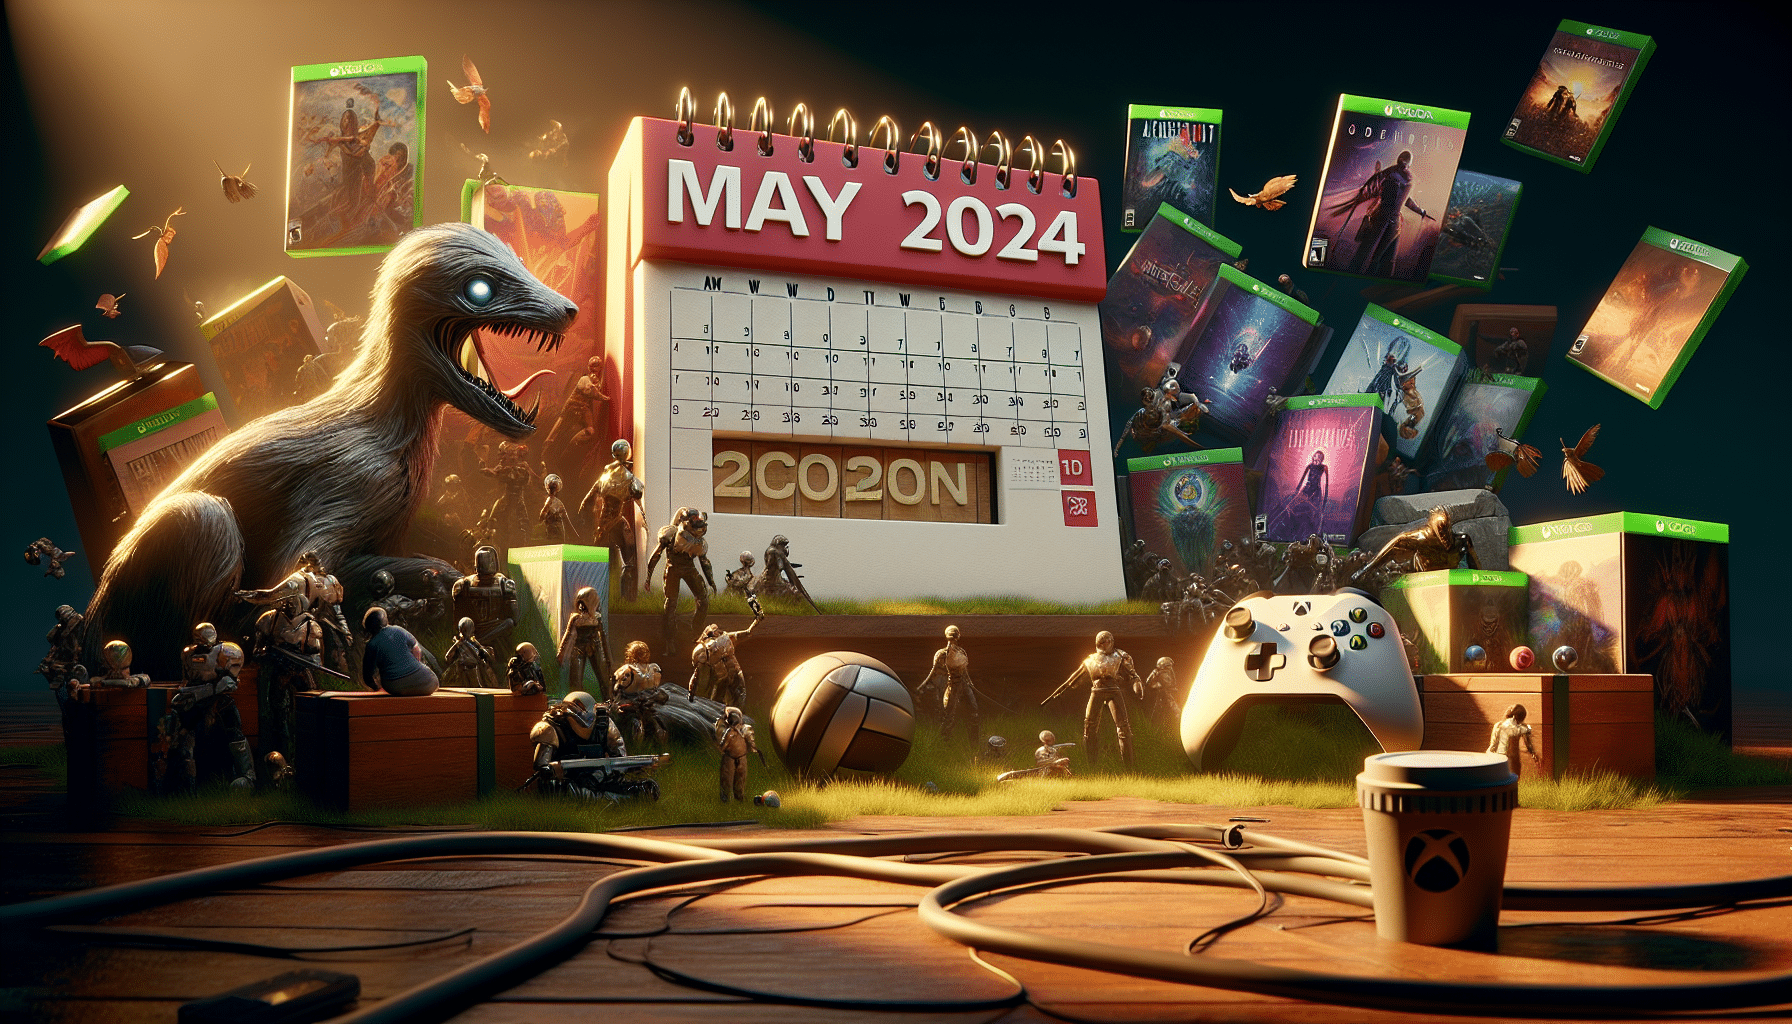 découvrez les jeux vidéo incontournables de mai 2024 sur xbox : préparez-vous à vivre une expérience gaming hors du commun !